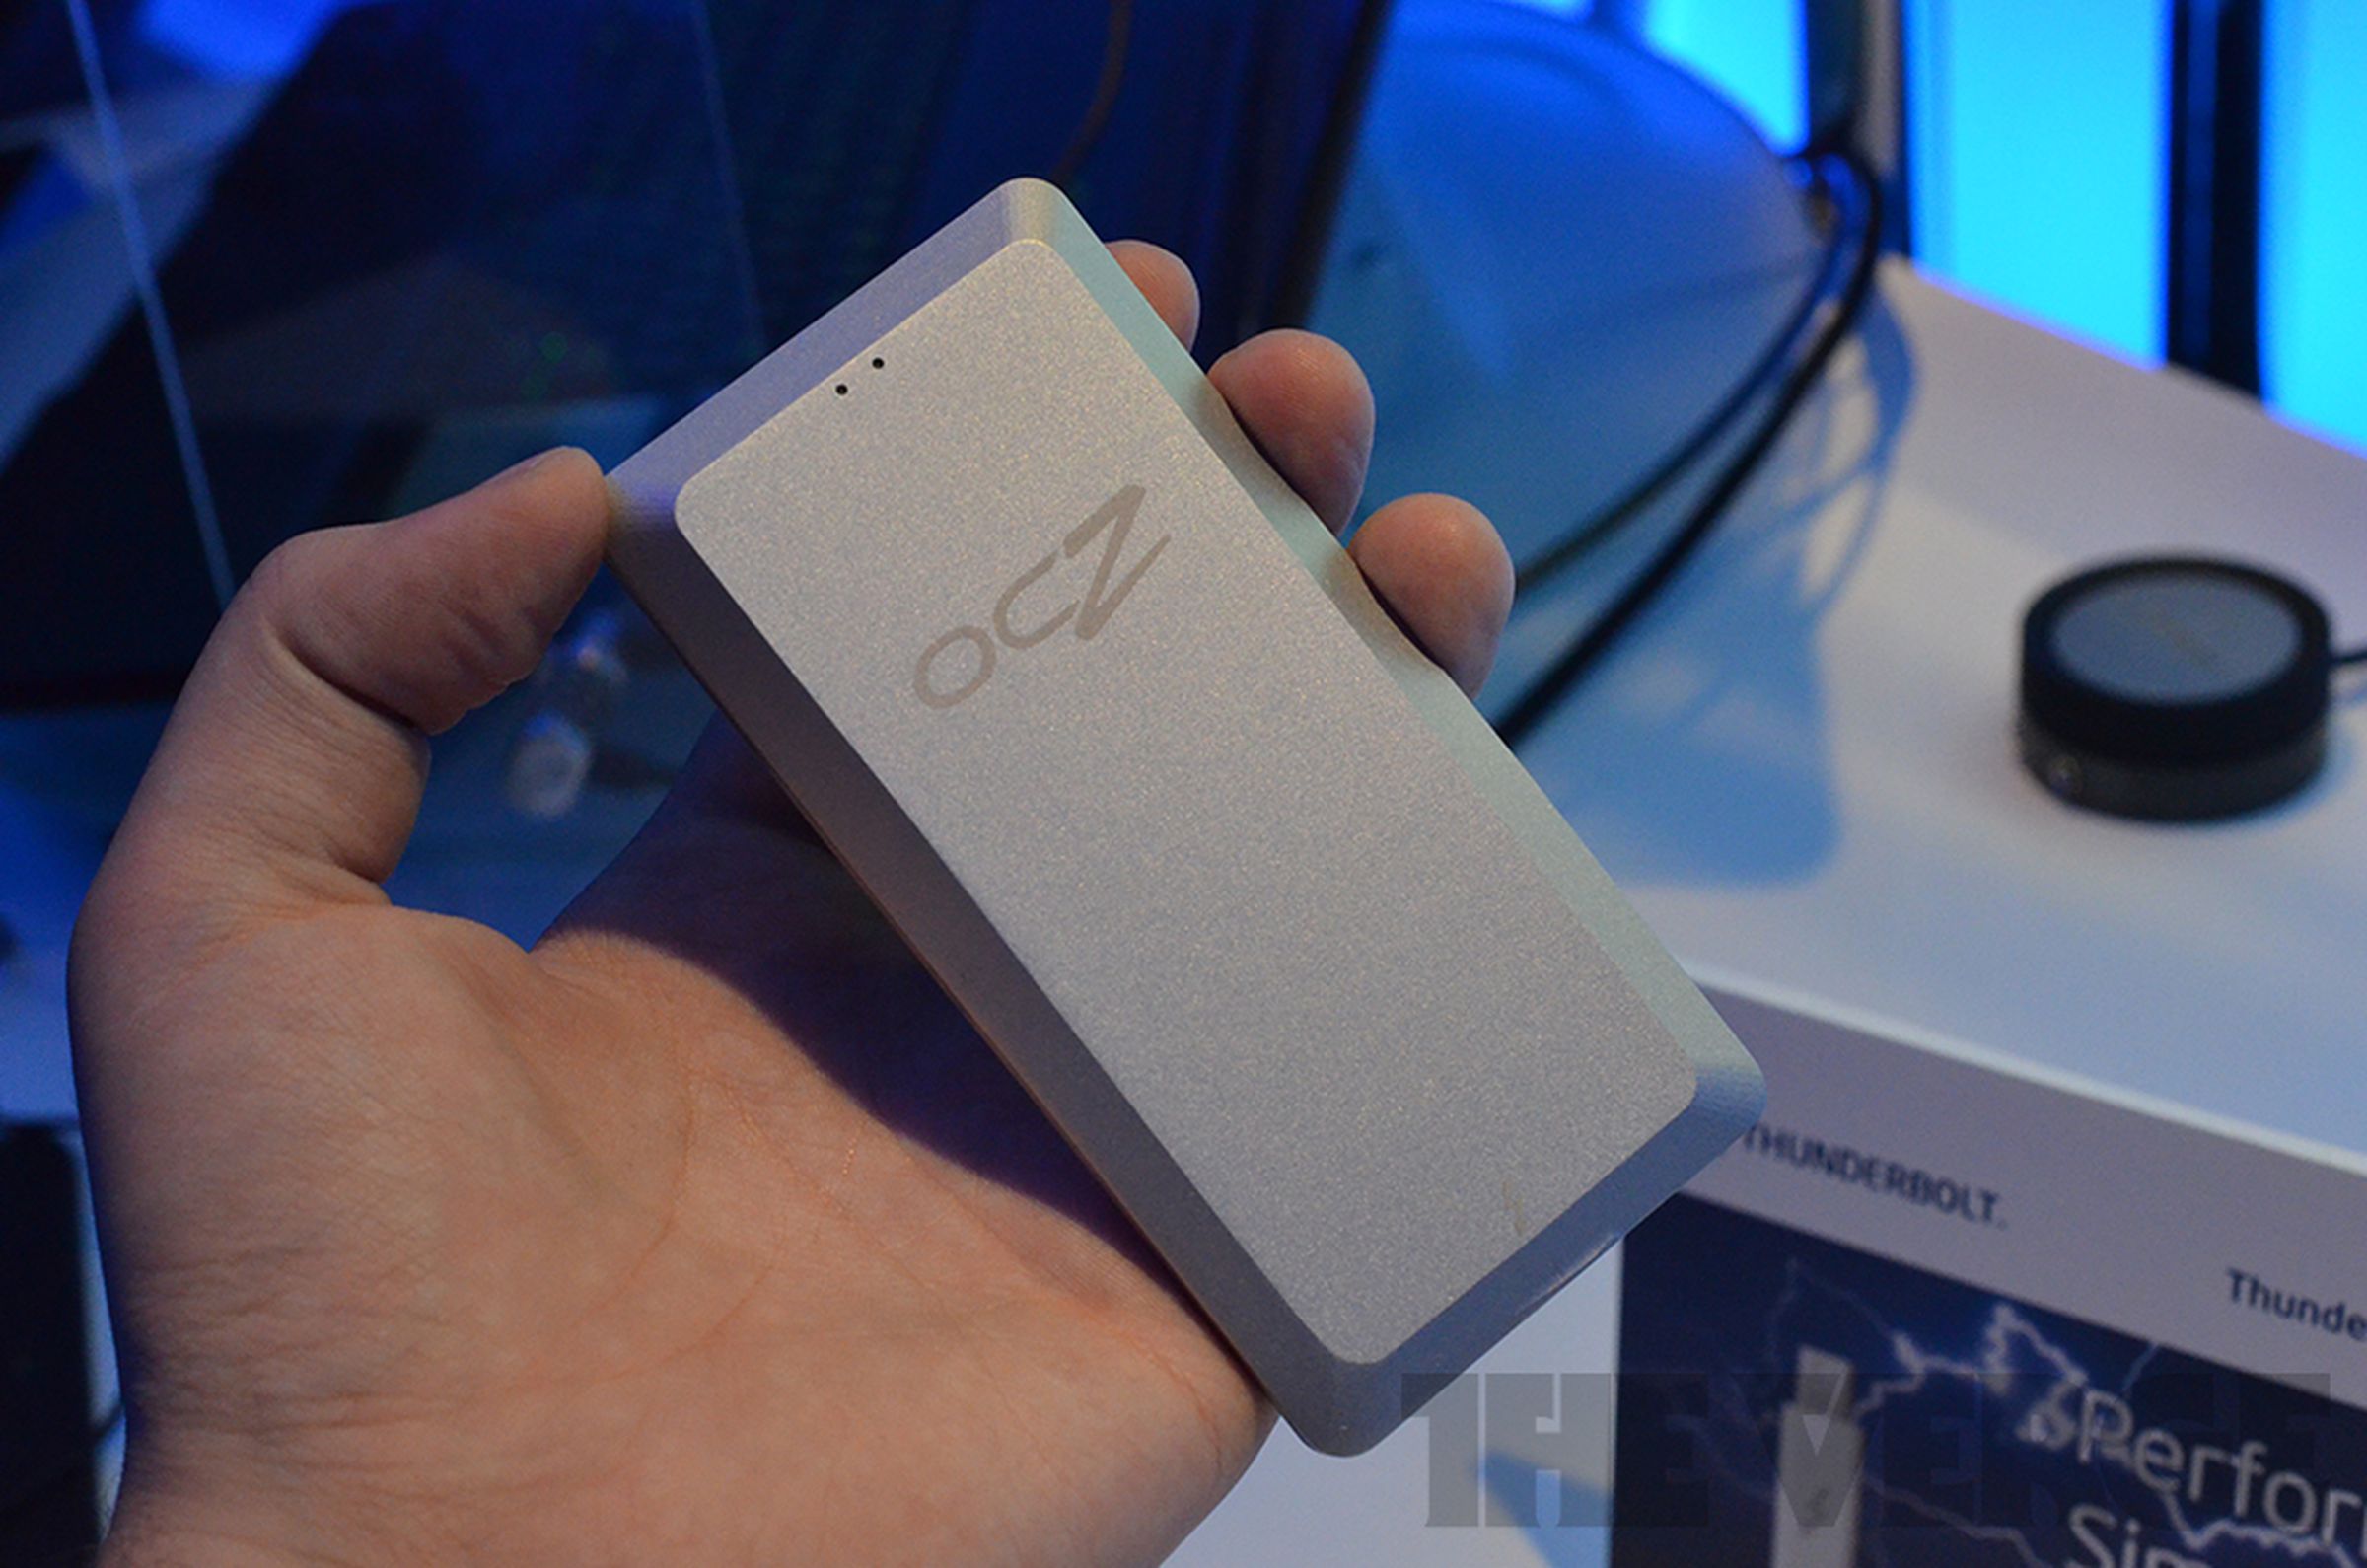 OCZ Lightfoot Thunderbolt external SSD hands-on photos